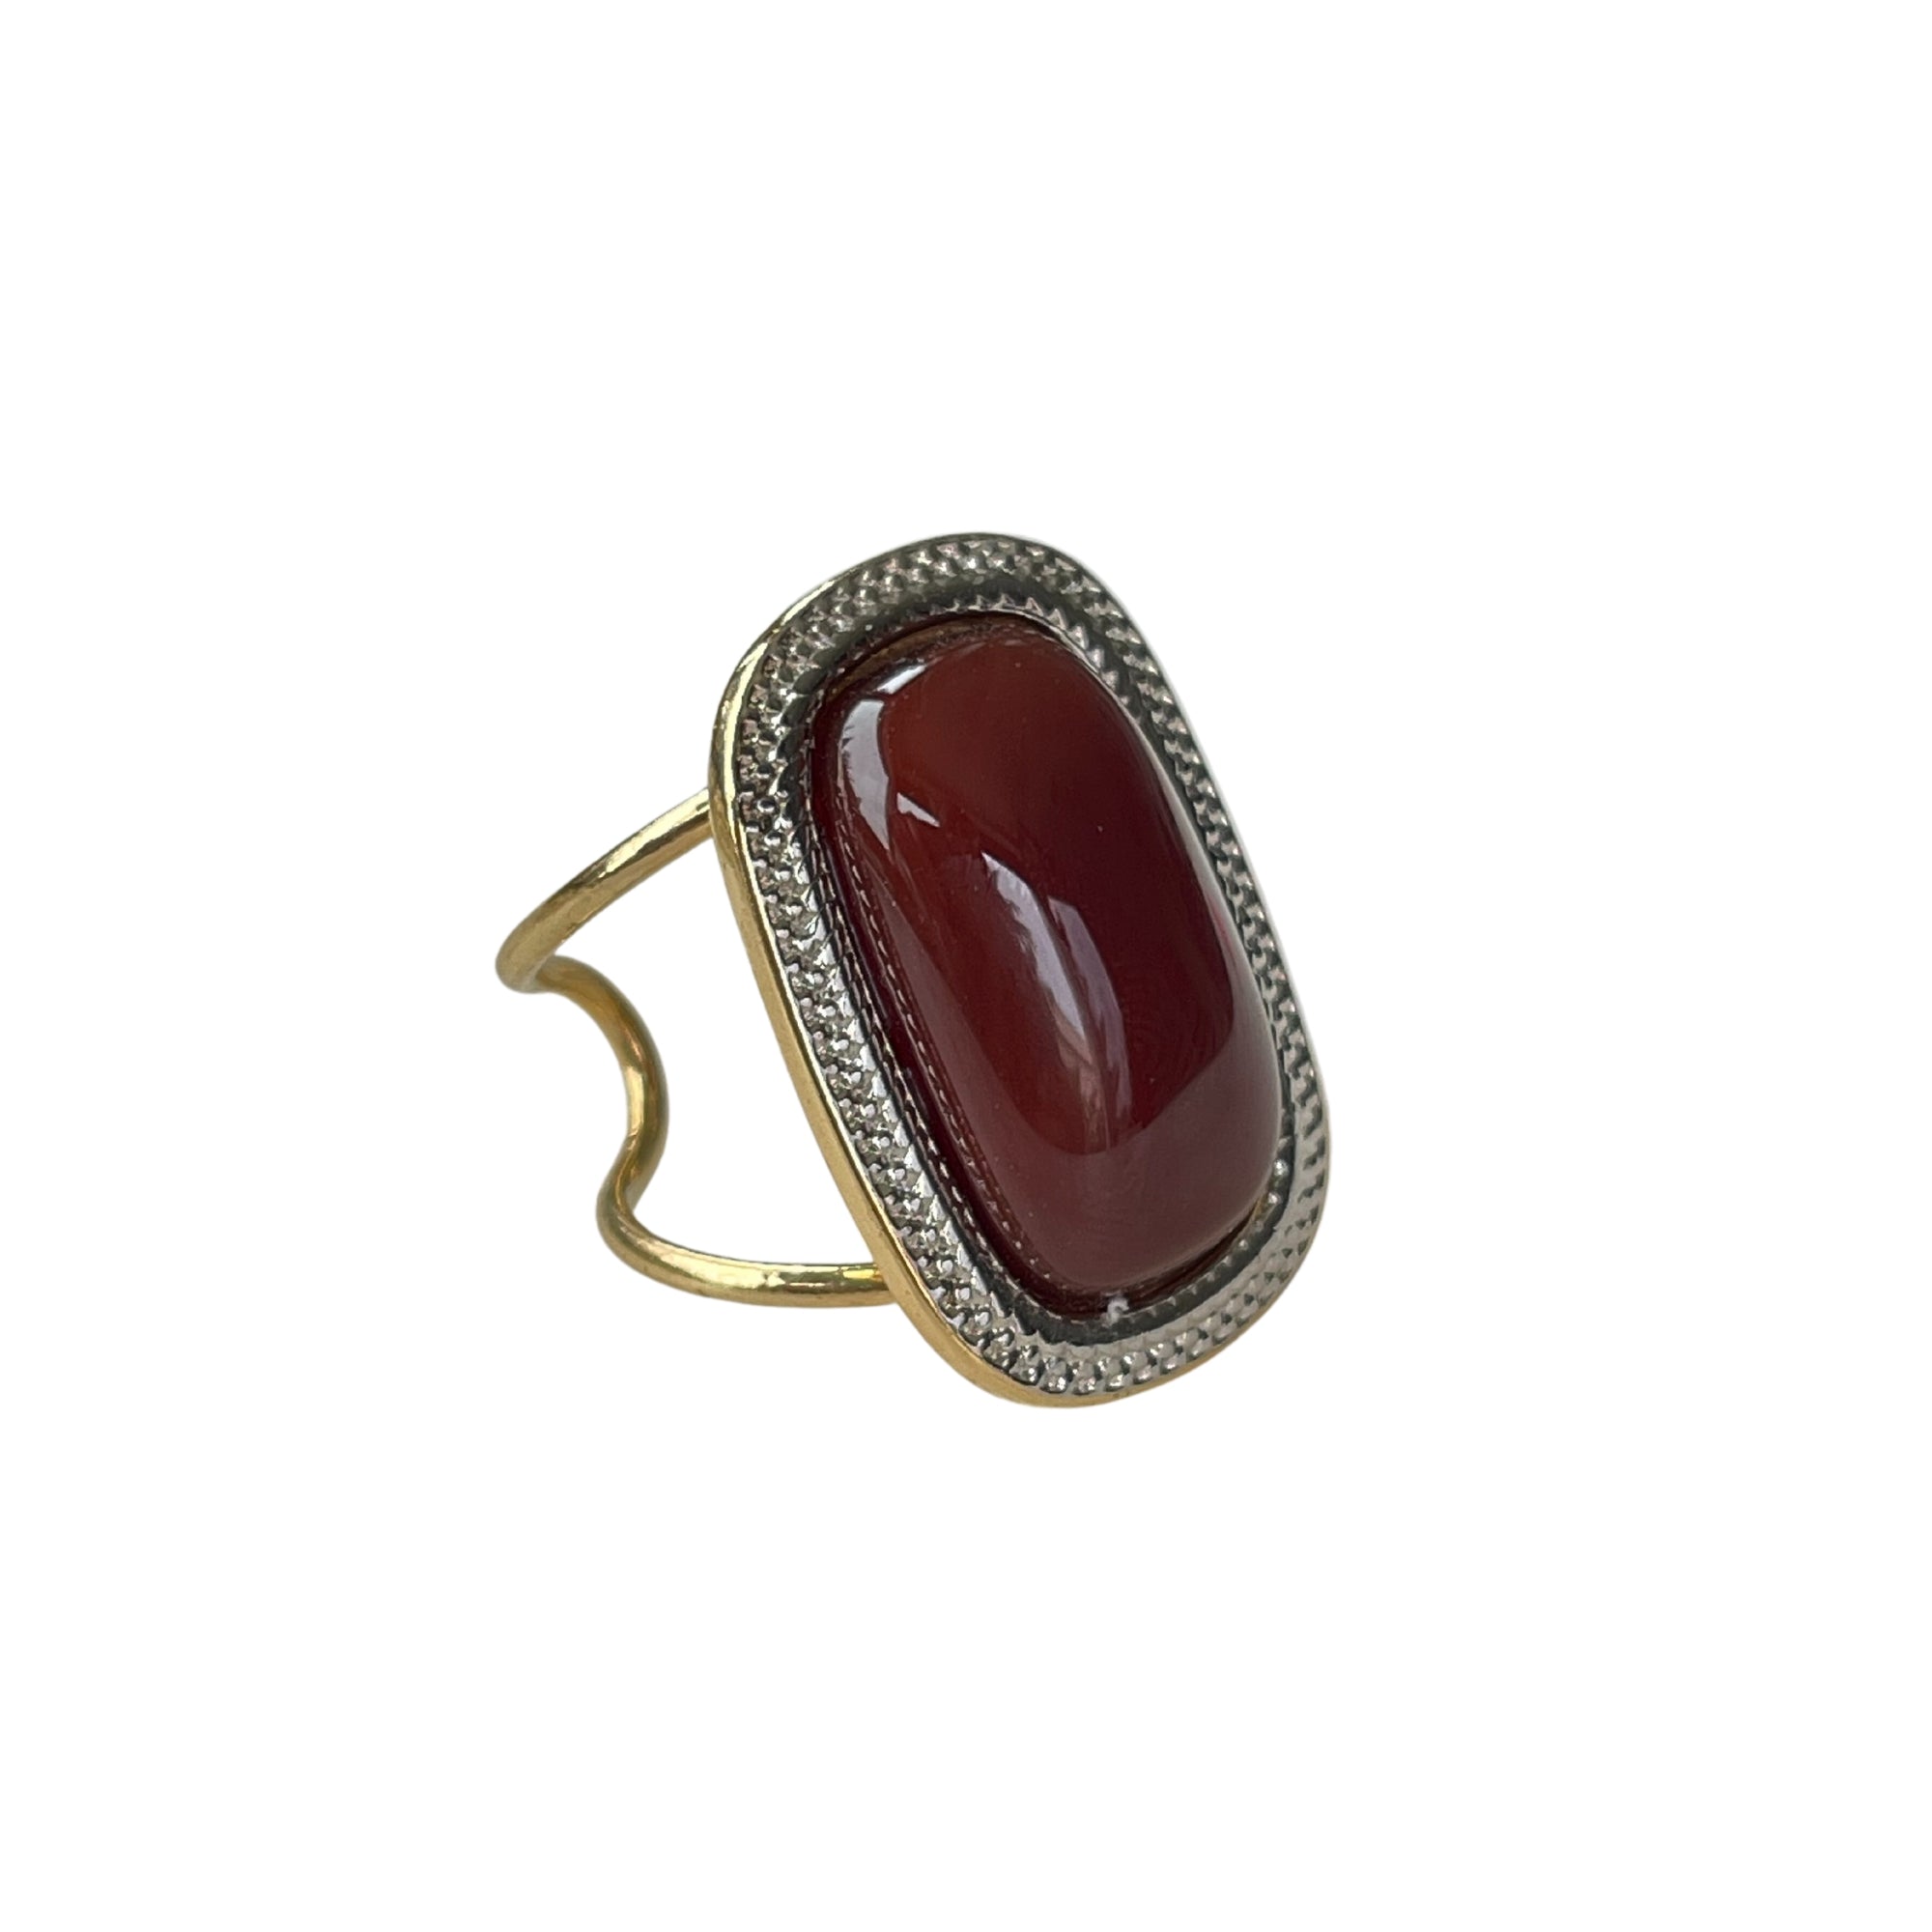 Der "MARIANA" Ring in 18 K Vergoldung mit Achat-Natursteinen strahlt pure Eleganz aus. Ein verstellbarer, offener Cocktailring in tiefem Rot, der subtilen Luxus verkörpert. Einzigartige Farbnuancen des Achats machen jeden Ring zu einem individuellen Blickfang für Frauen, die elegante Akzente schätzen